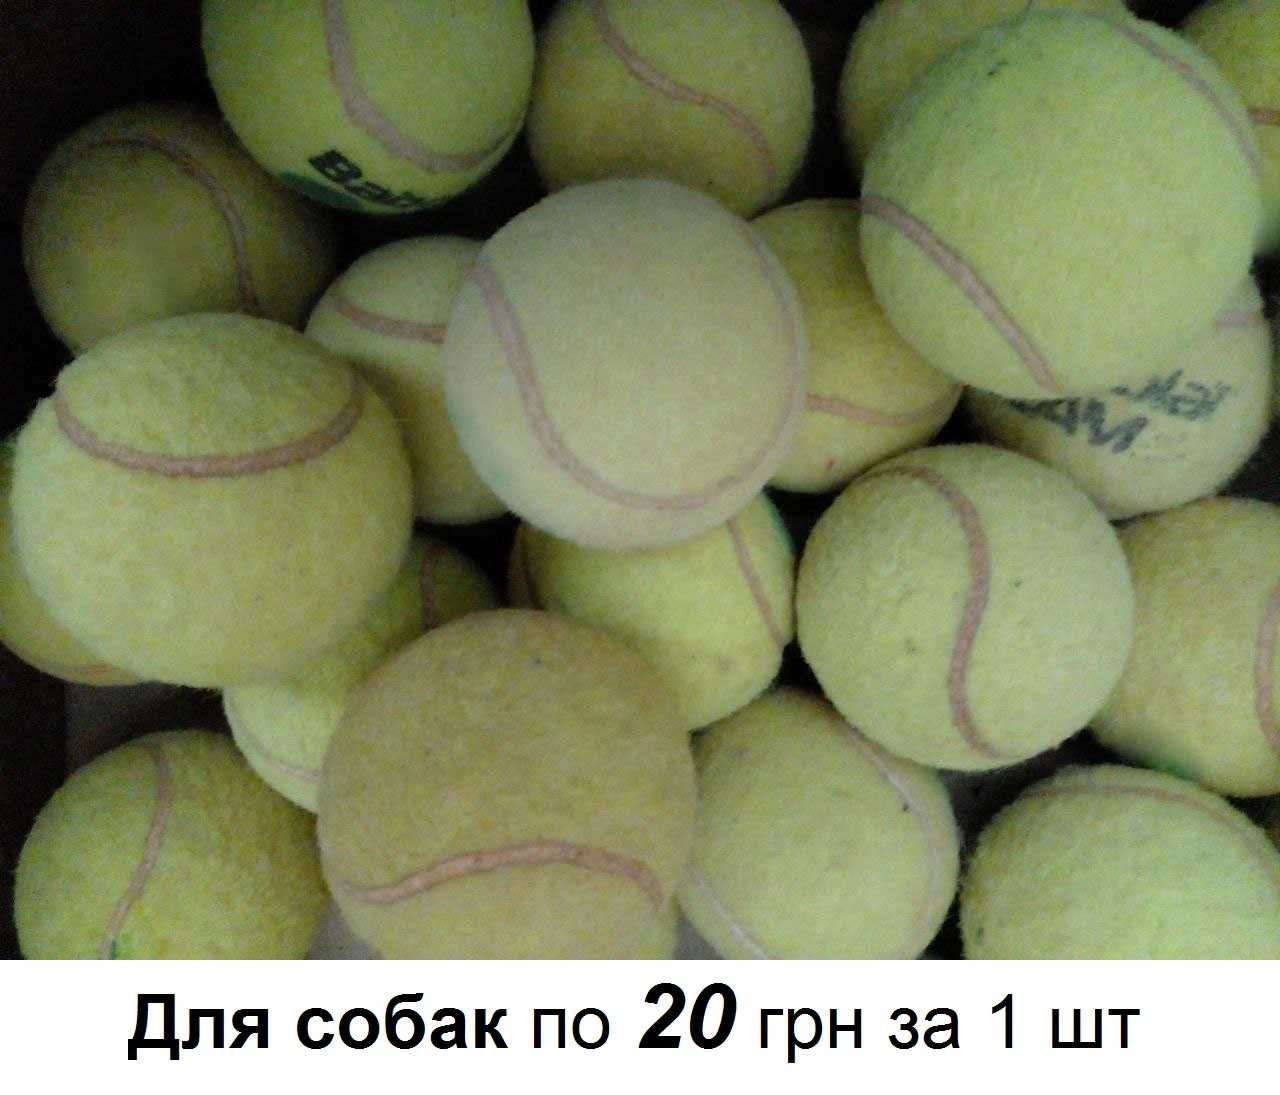 Купити тенісний м'яч б/у. Купить теннисный мячик б/у.